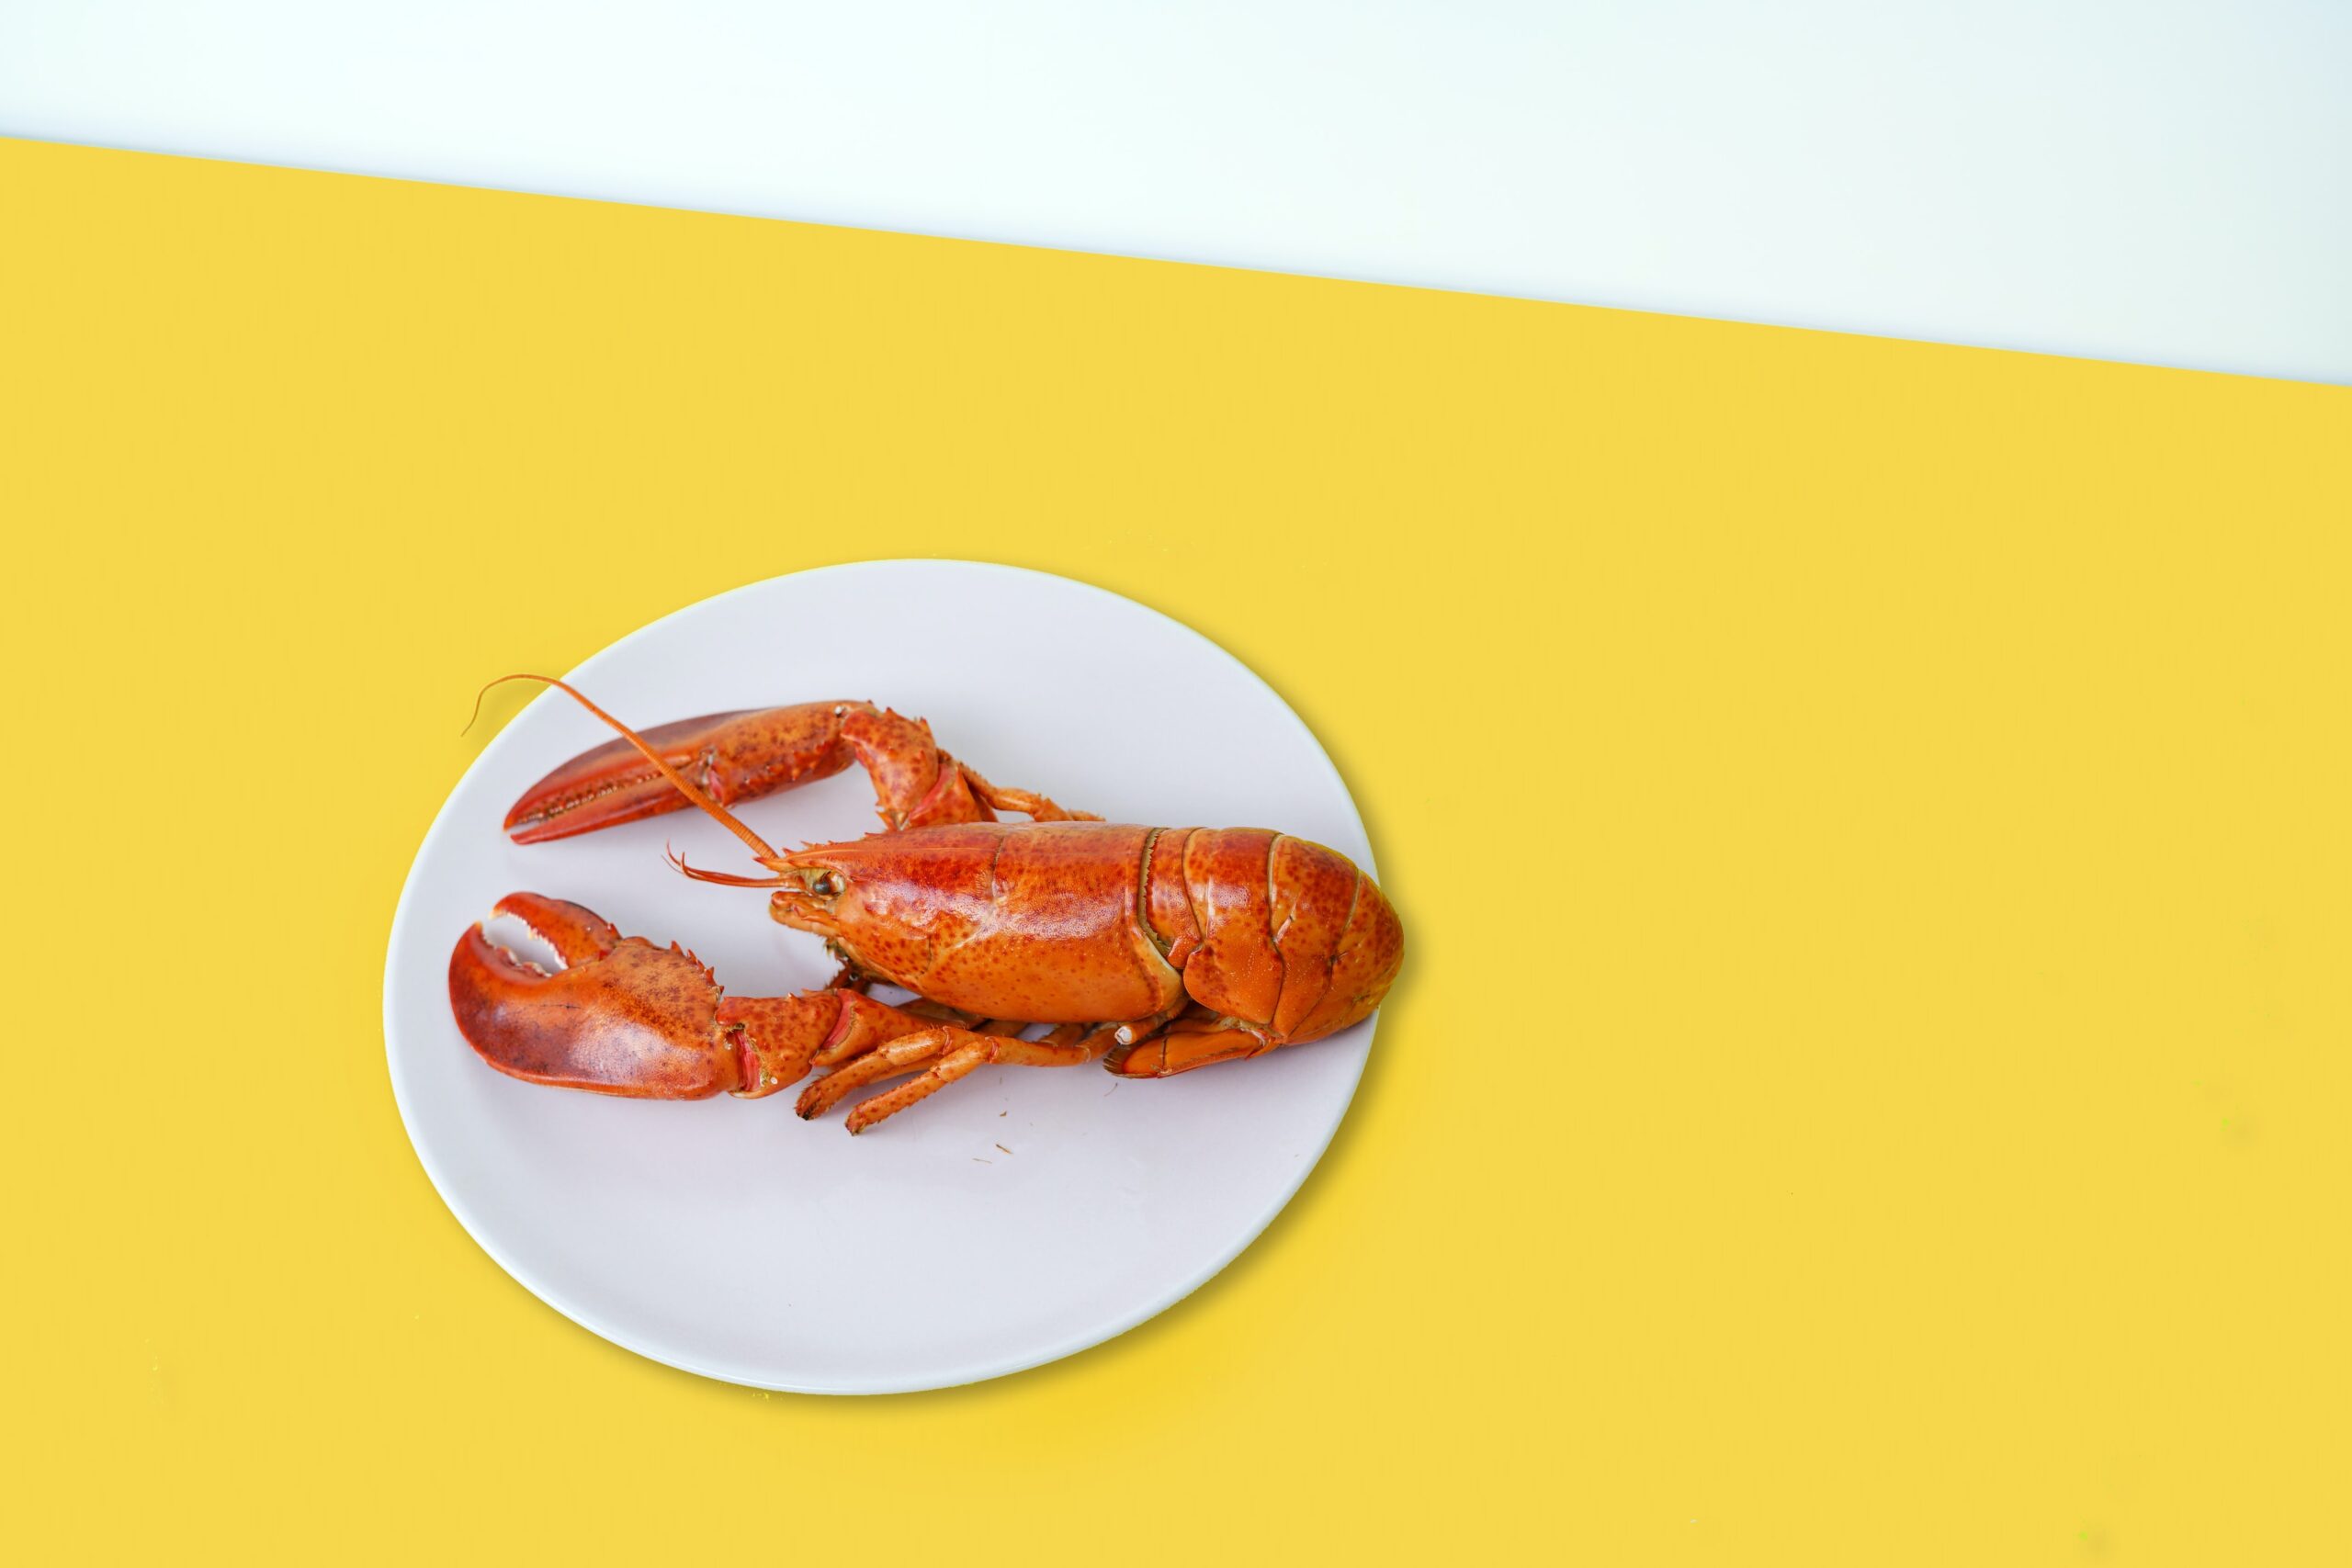 ザリガニを食べる時の調理方法 下処理から味について紹介 メシオト 食専門のwebメディア